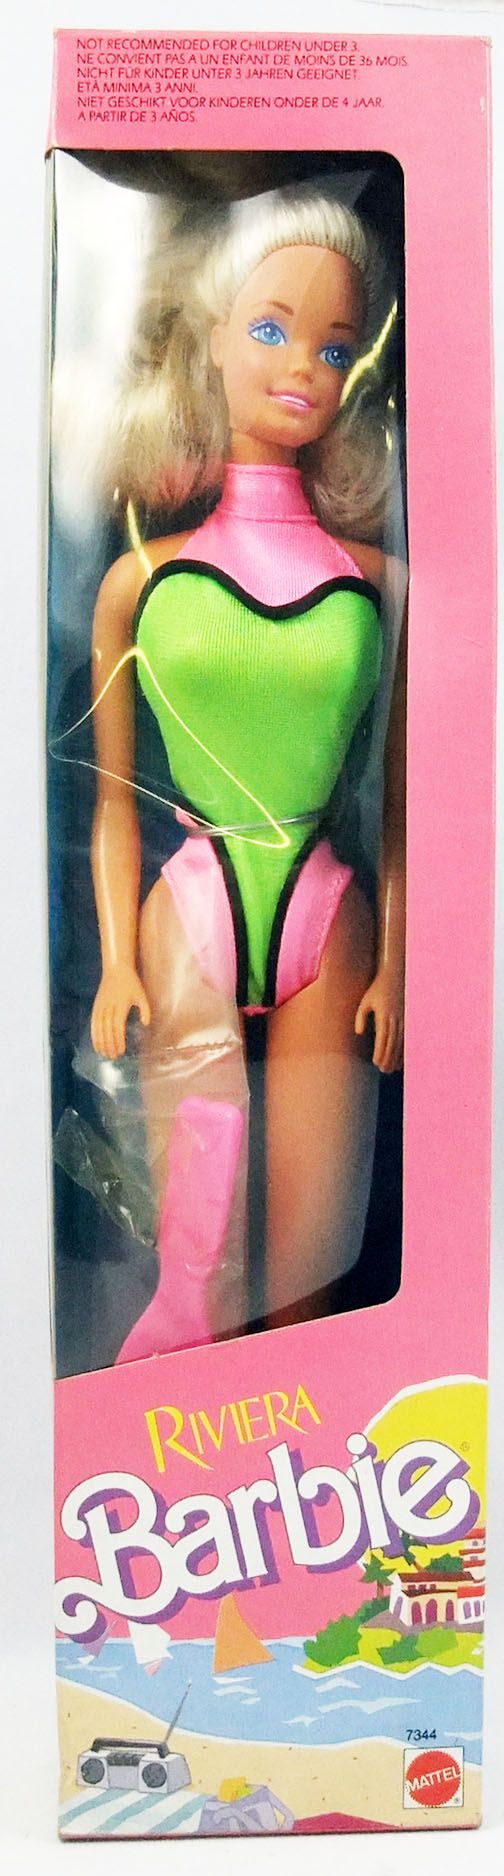 Sortie cafe betekenis Barbie - Riviera Barbie - Mattel 1989 (ref.7344)